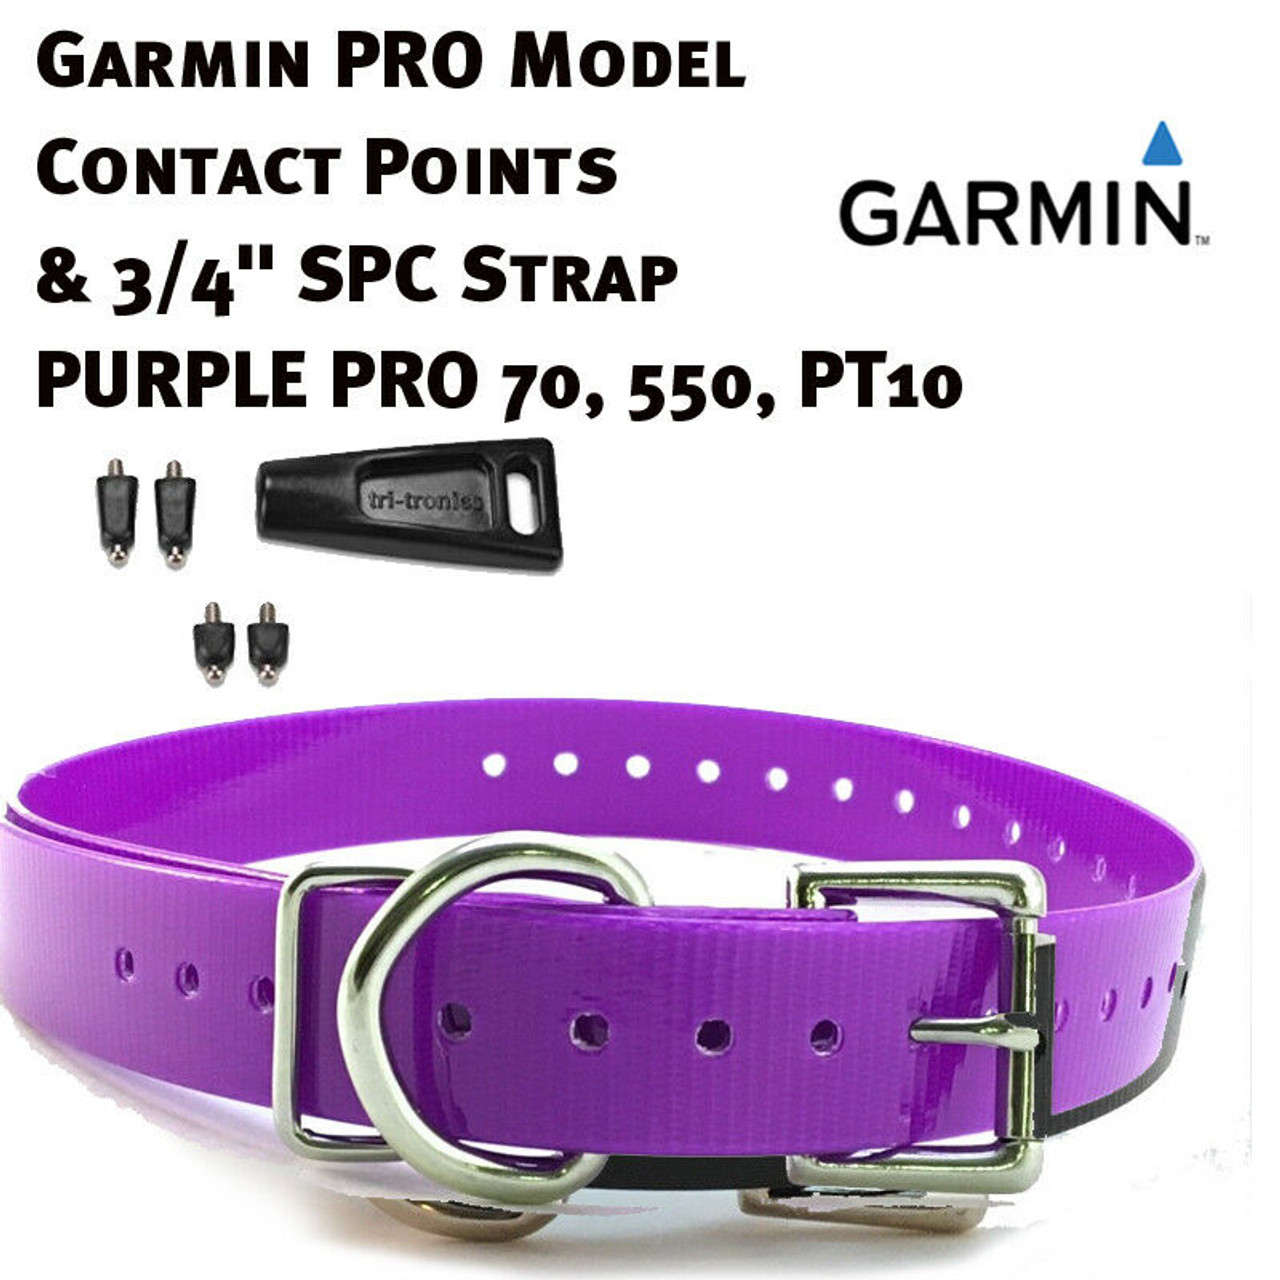 Garmin Pro Model Contact Points & 3/4 Sparky Pet Co Strap - Neon Orange  Pro 70, 550, PT08